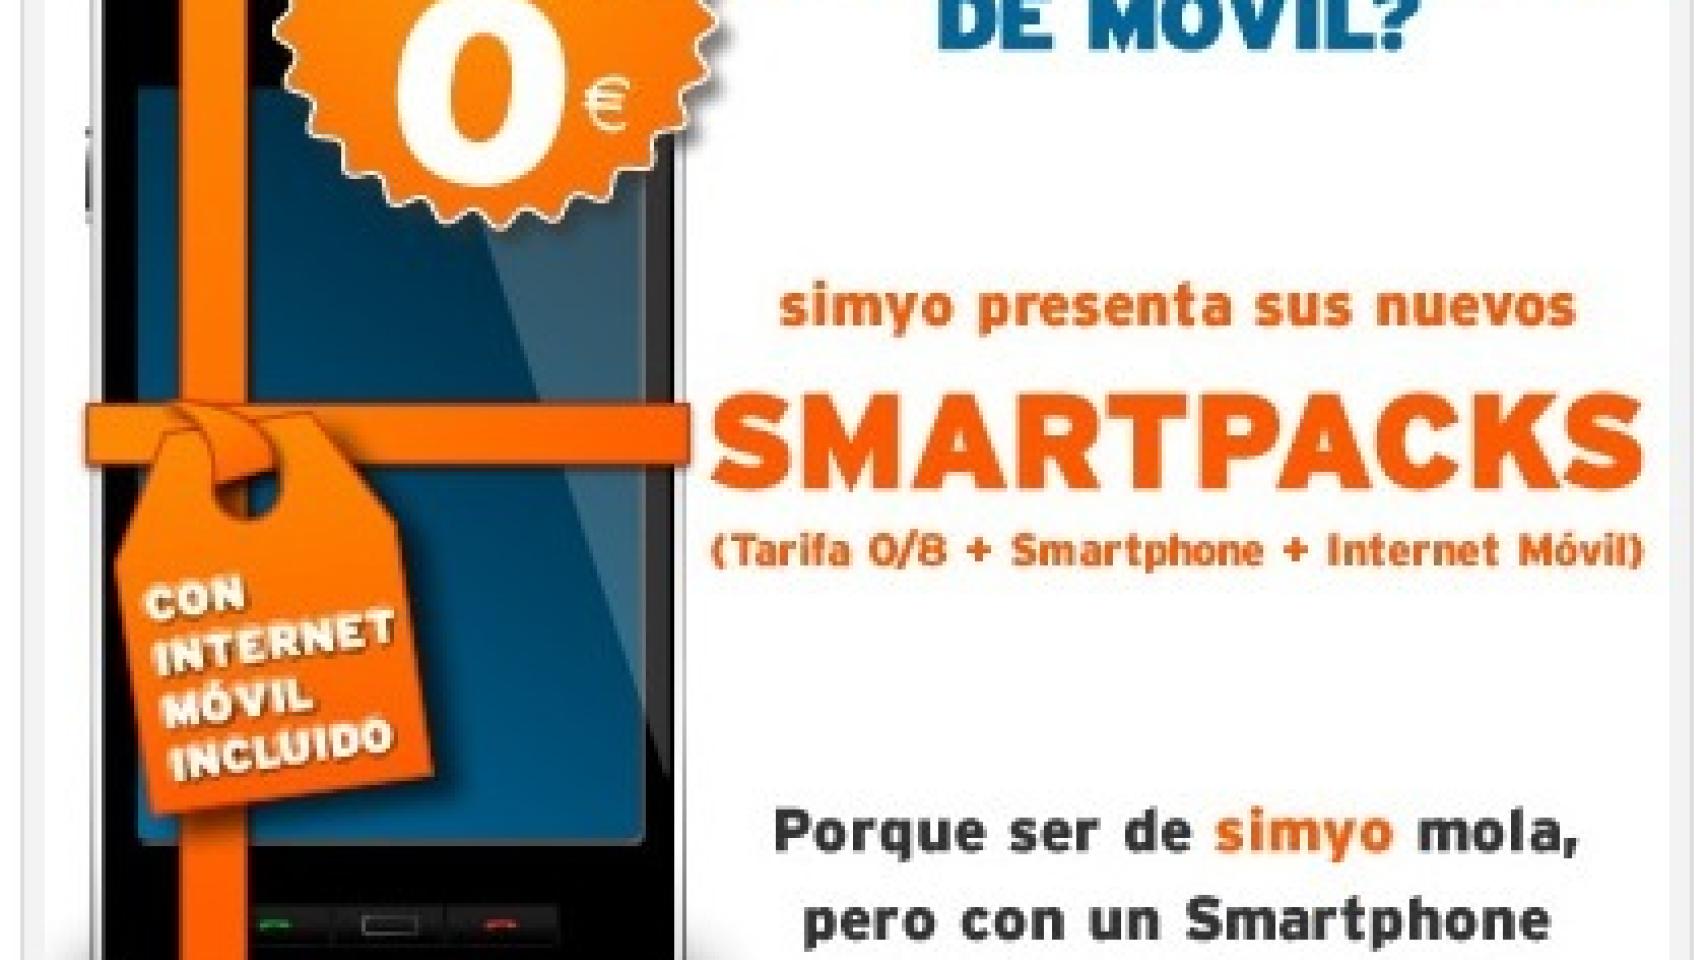 Smartphones Android desde 0€ con Simyo, los Smartpacks: Wildfire S y Samsung Ace y Galaxy Mini